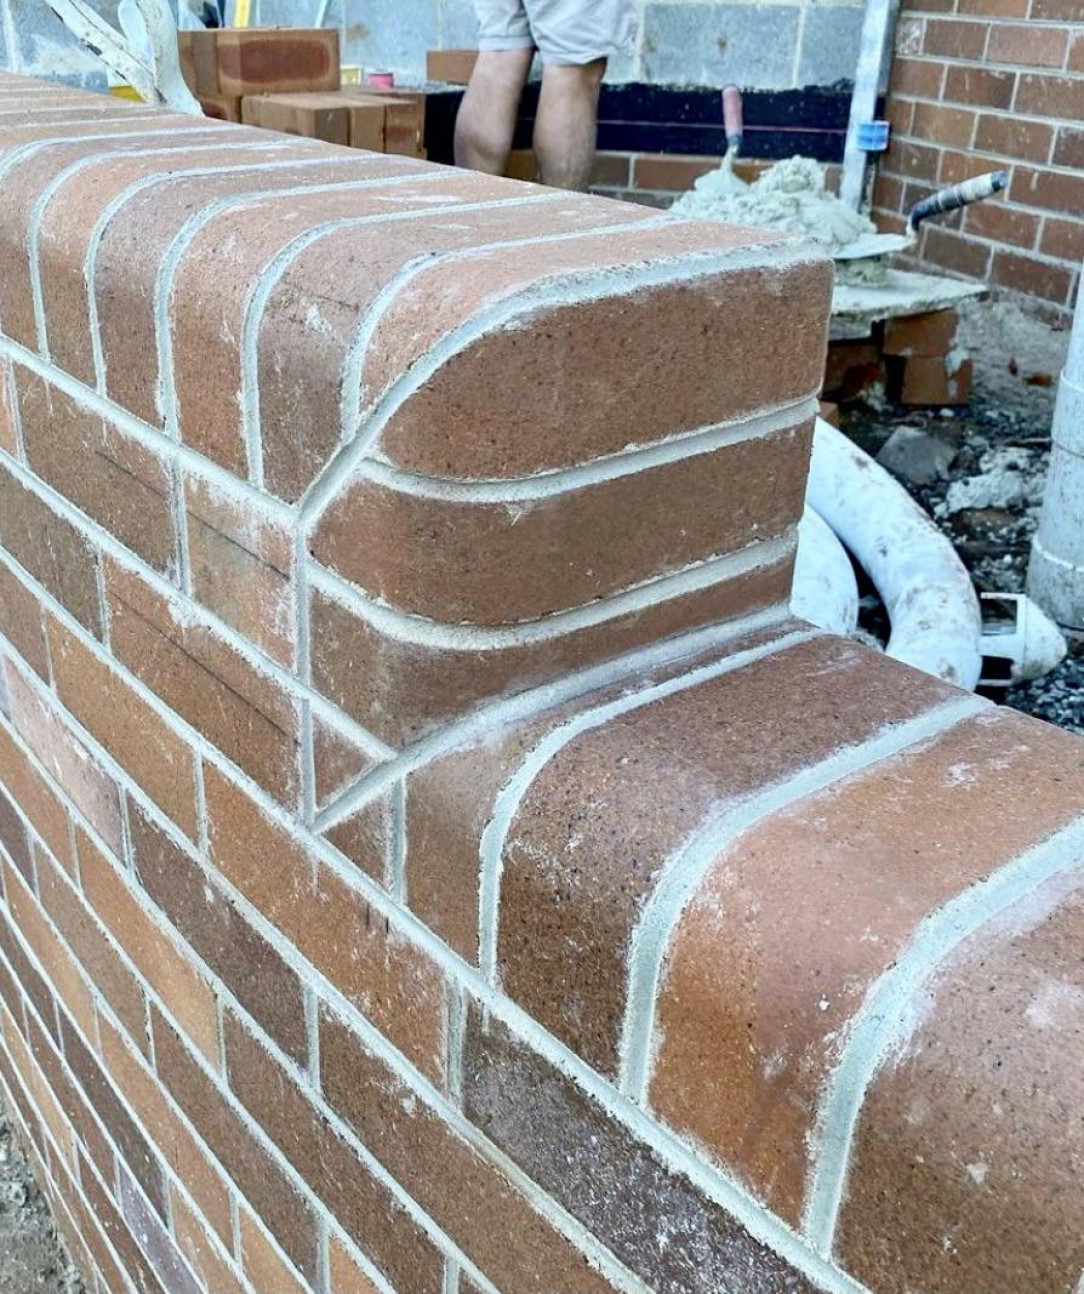 These nice bricks